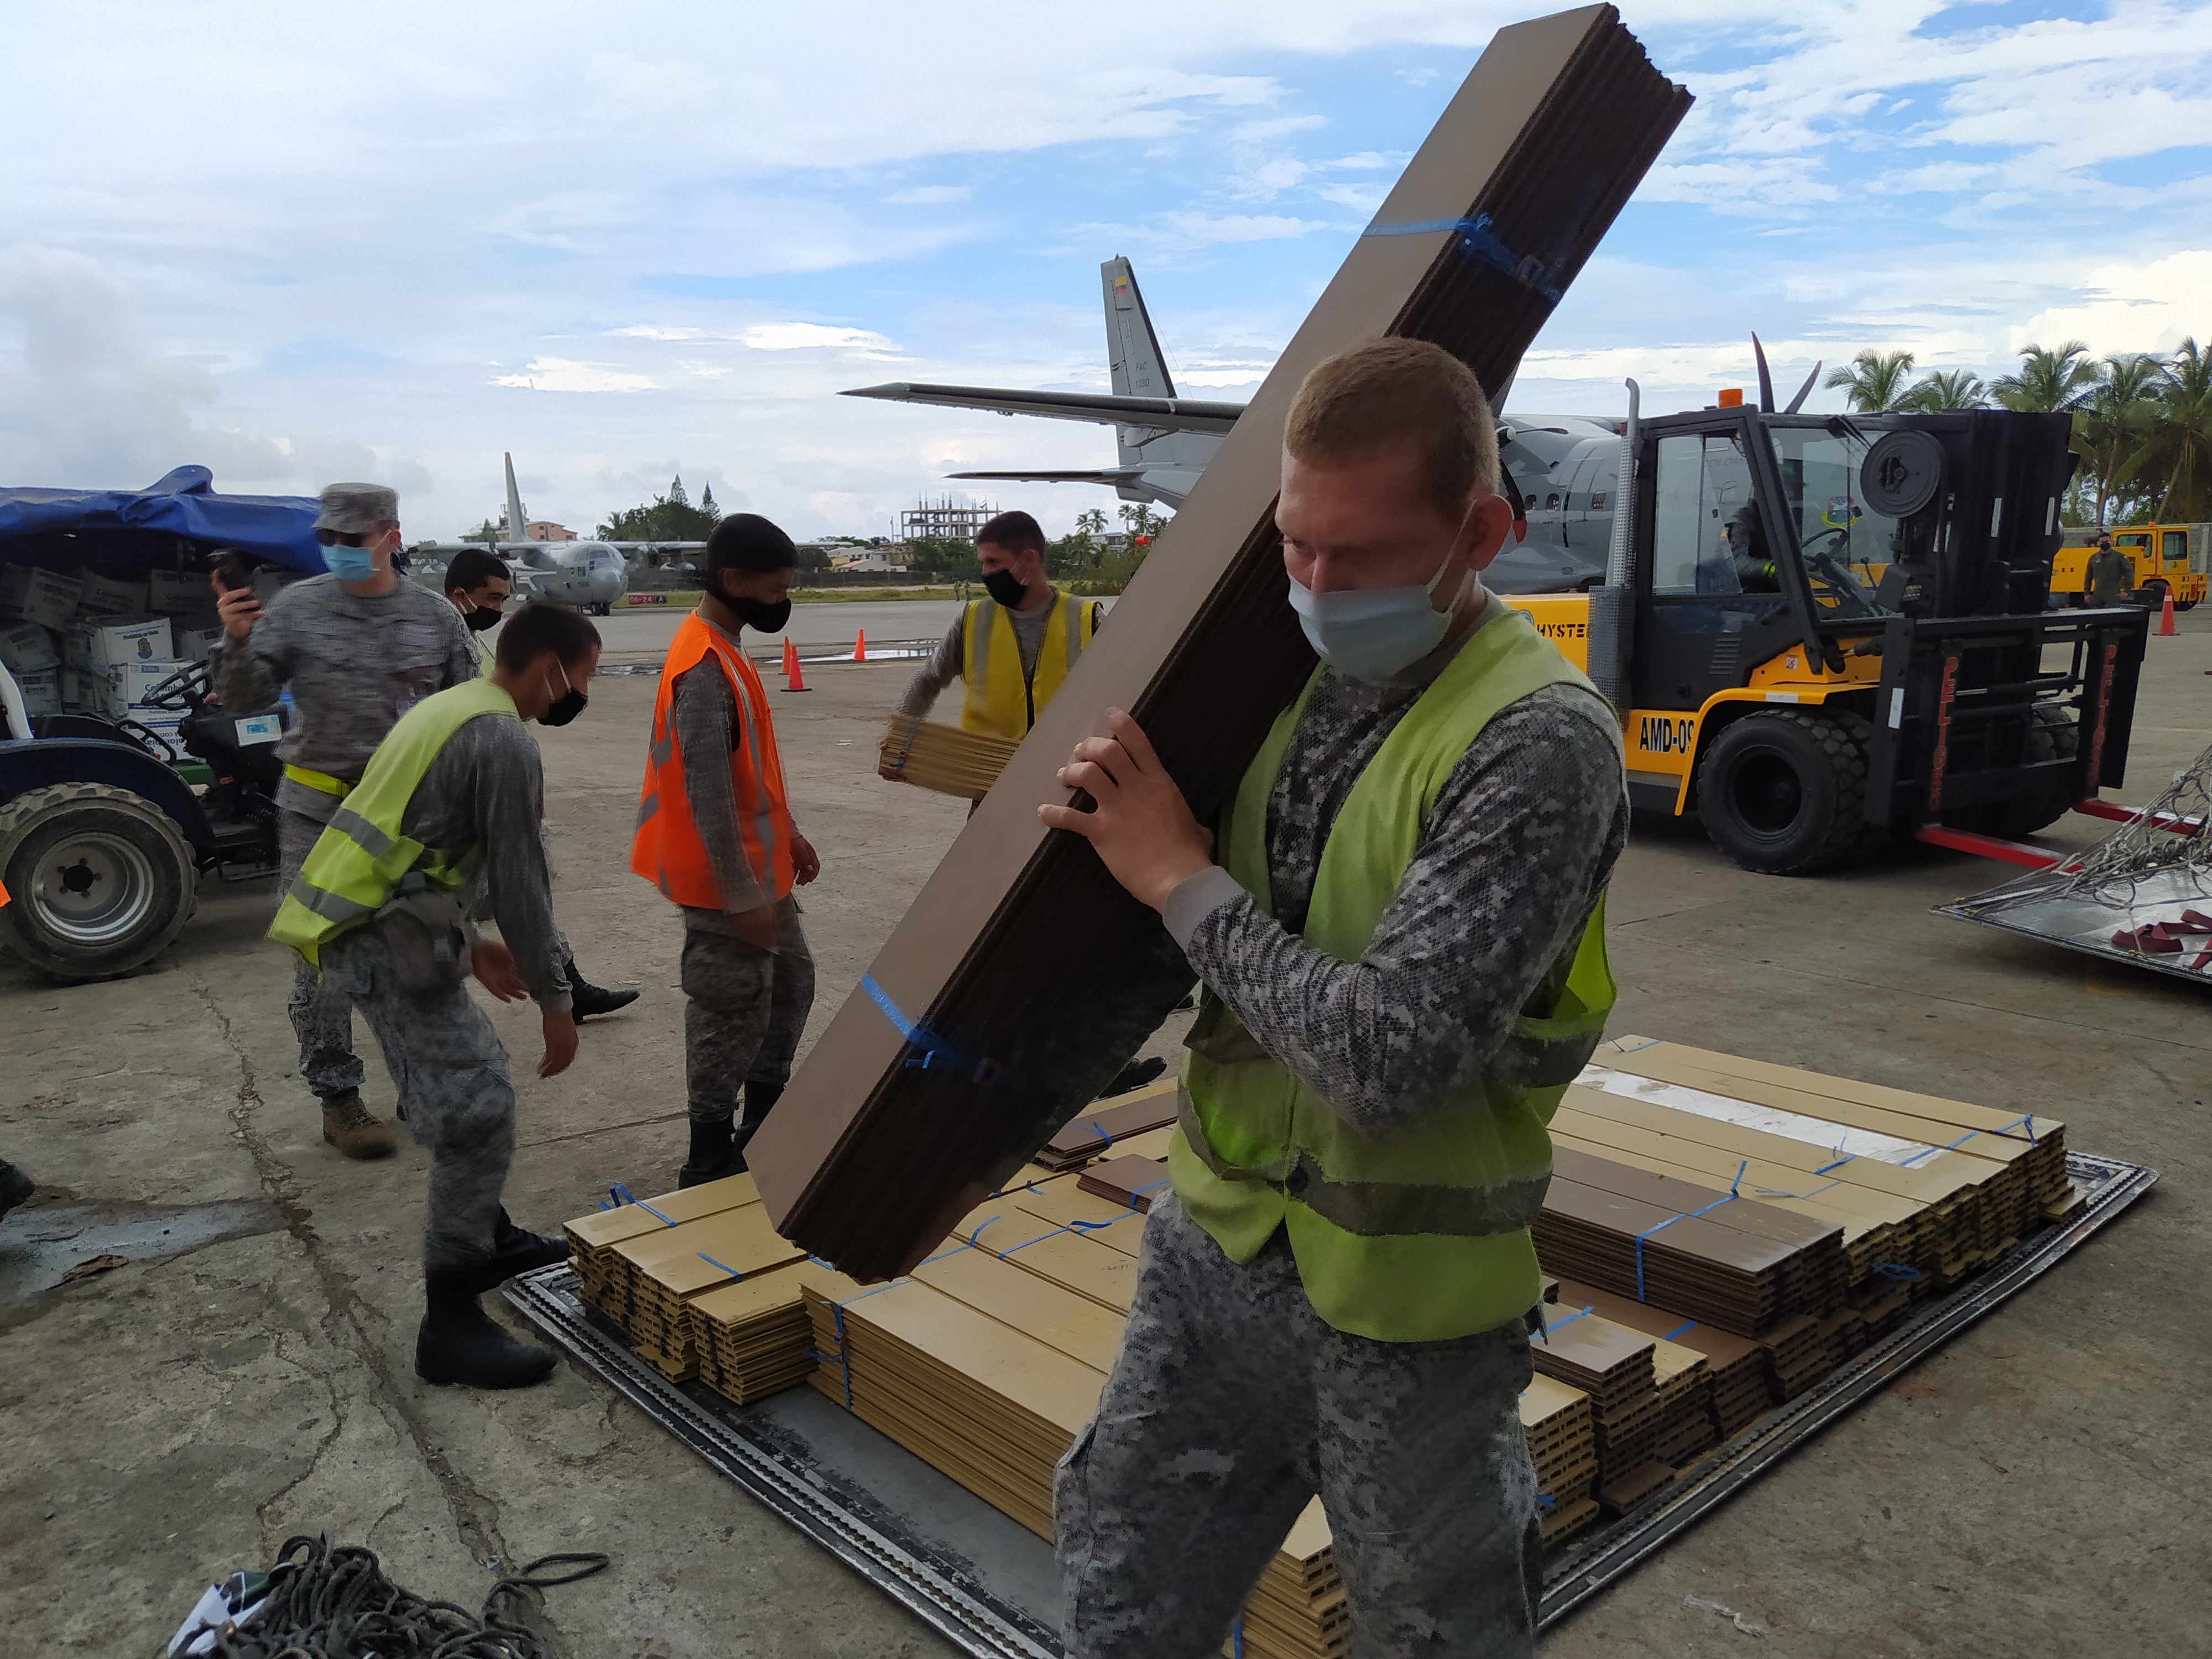 Materiales para la reconstrucción de Providencia son transportados por su Fuerza Aérea